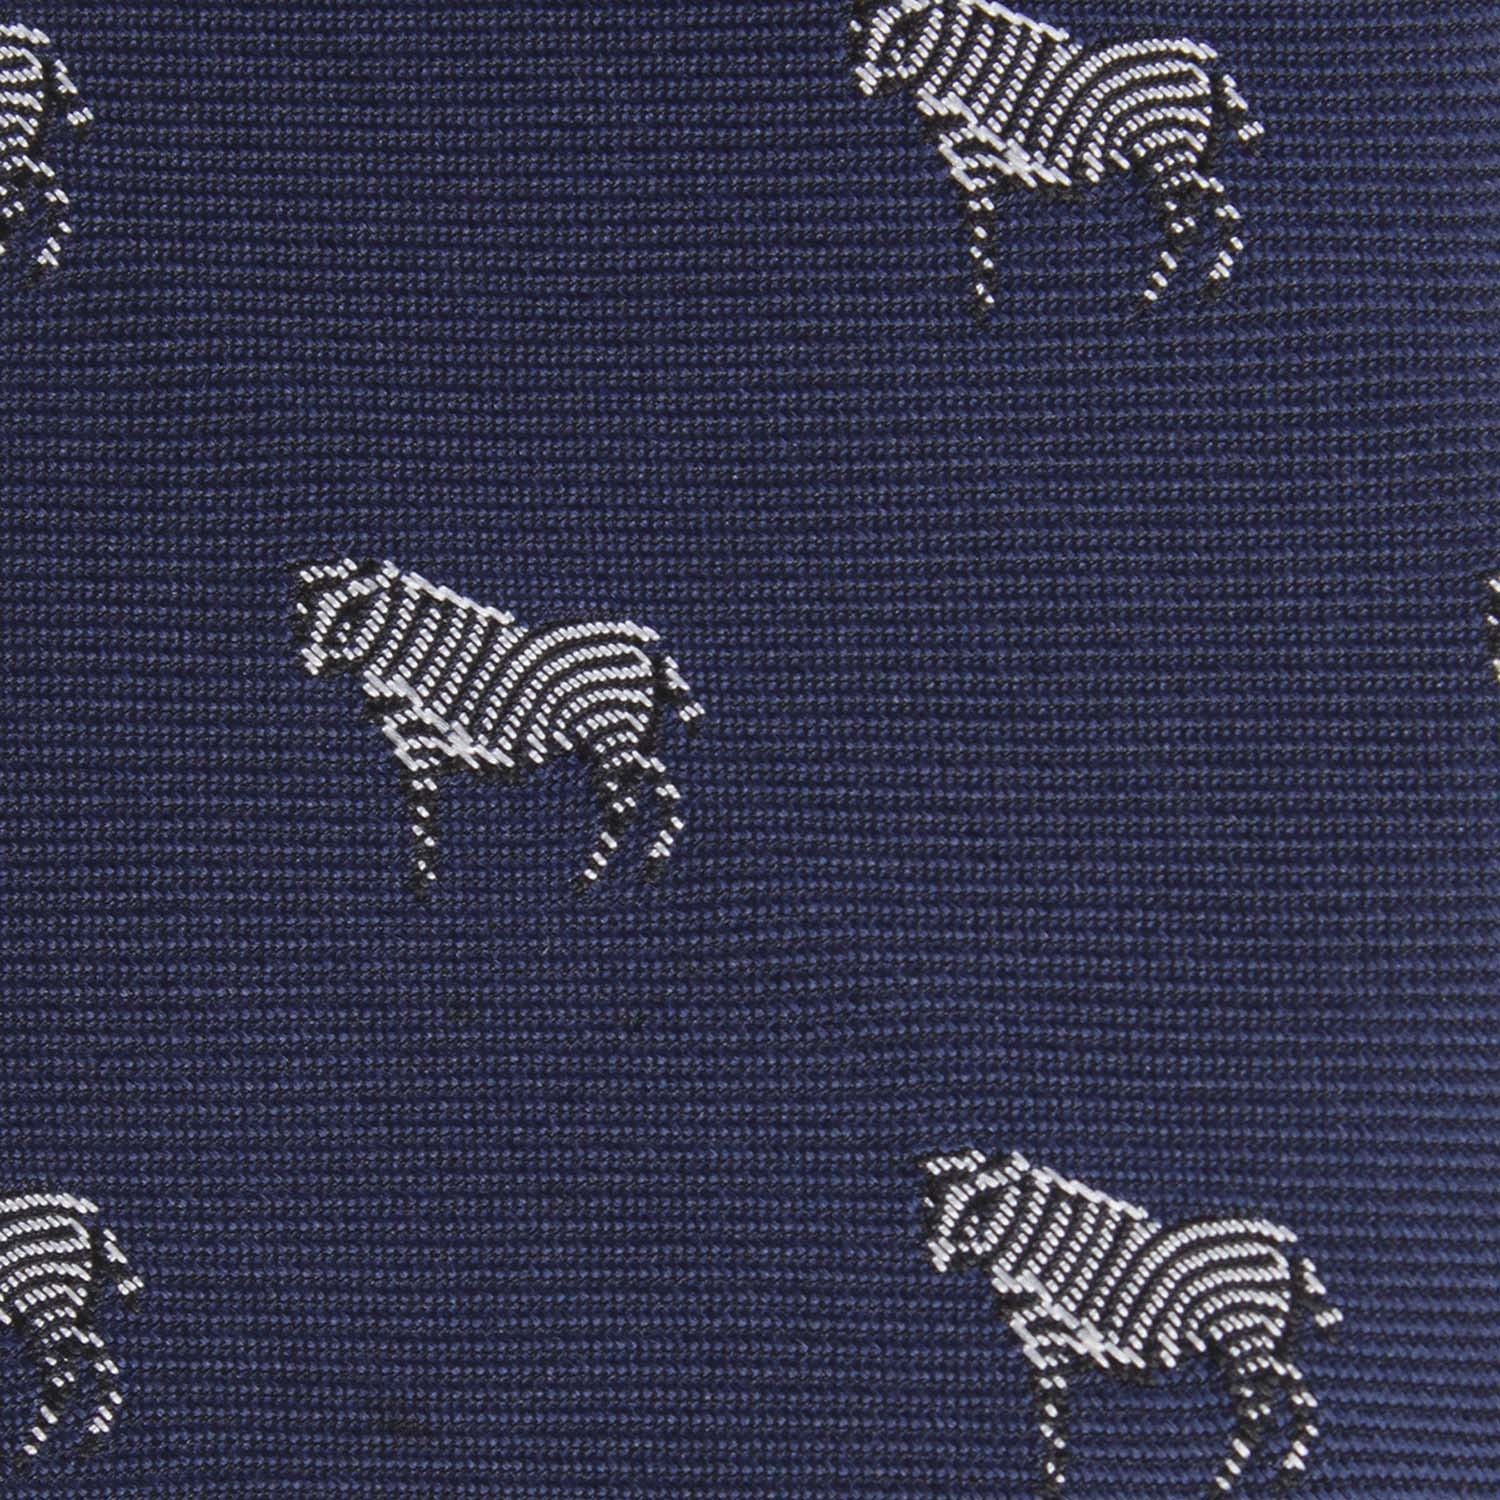 Navy Blue Zebra Fabric Kids Bow Tie M105